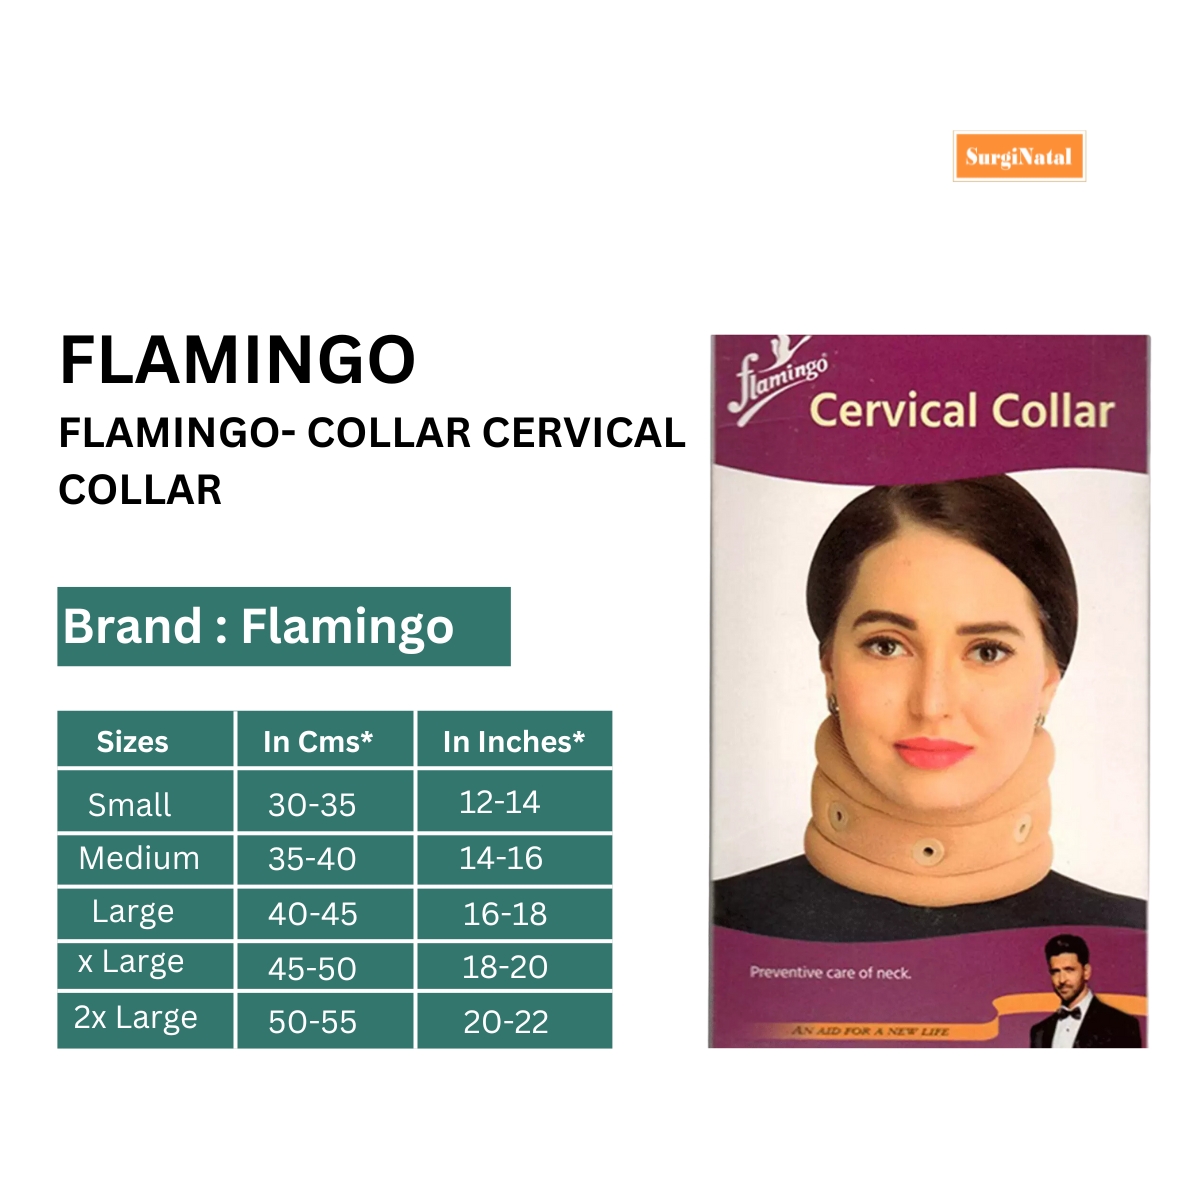 flamingo- collar cervical collar